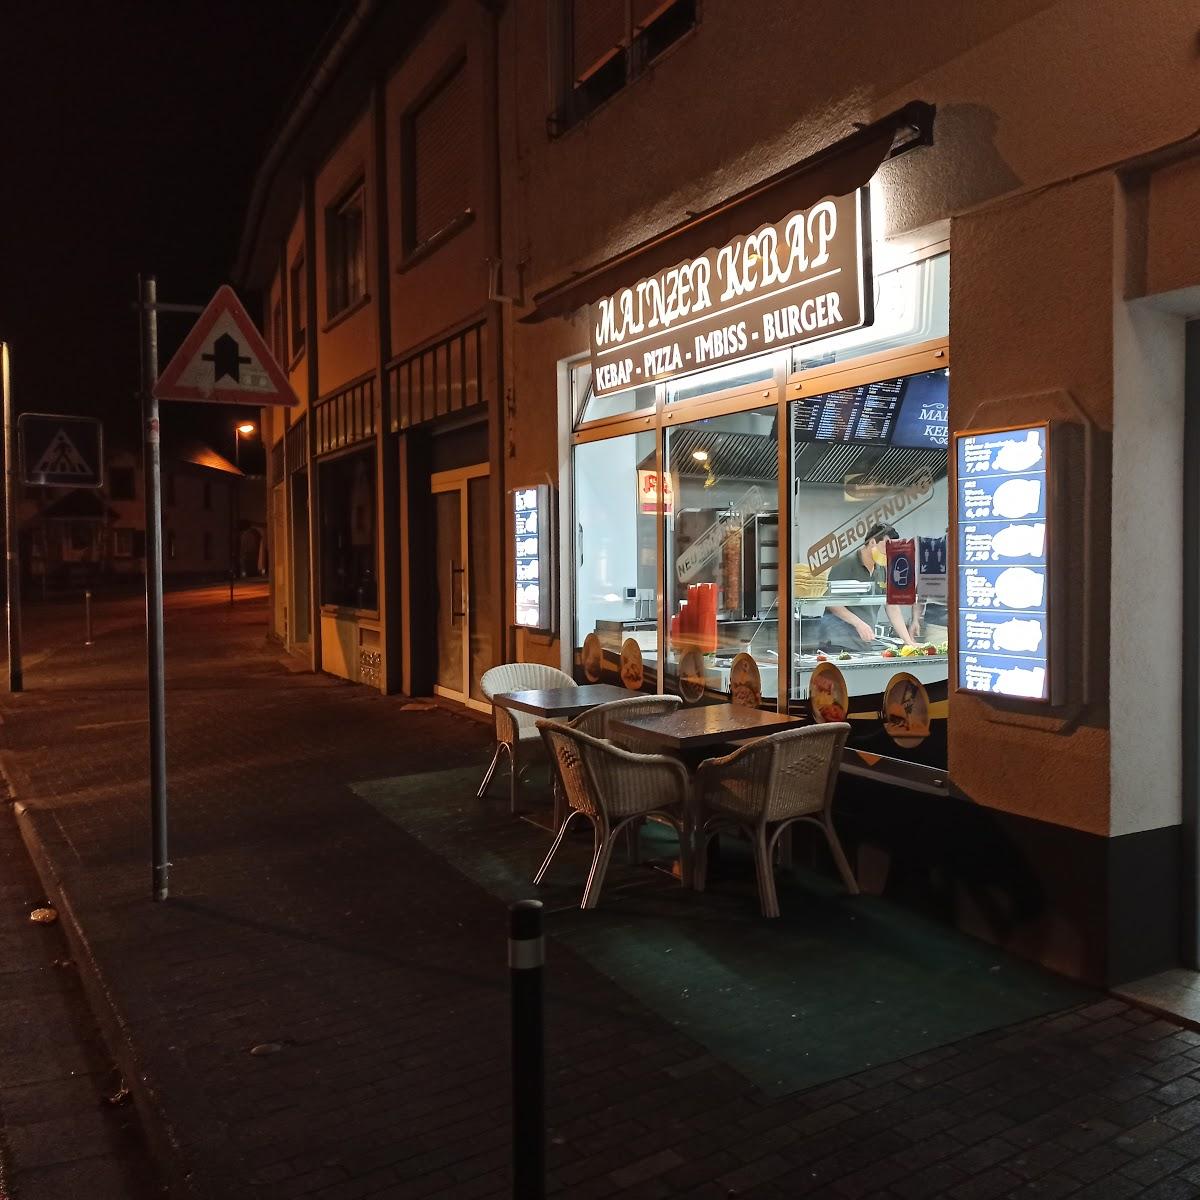 Restaurant "er Kebap" in  Mainz